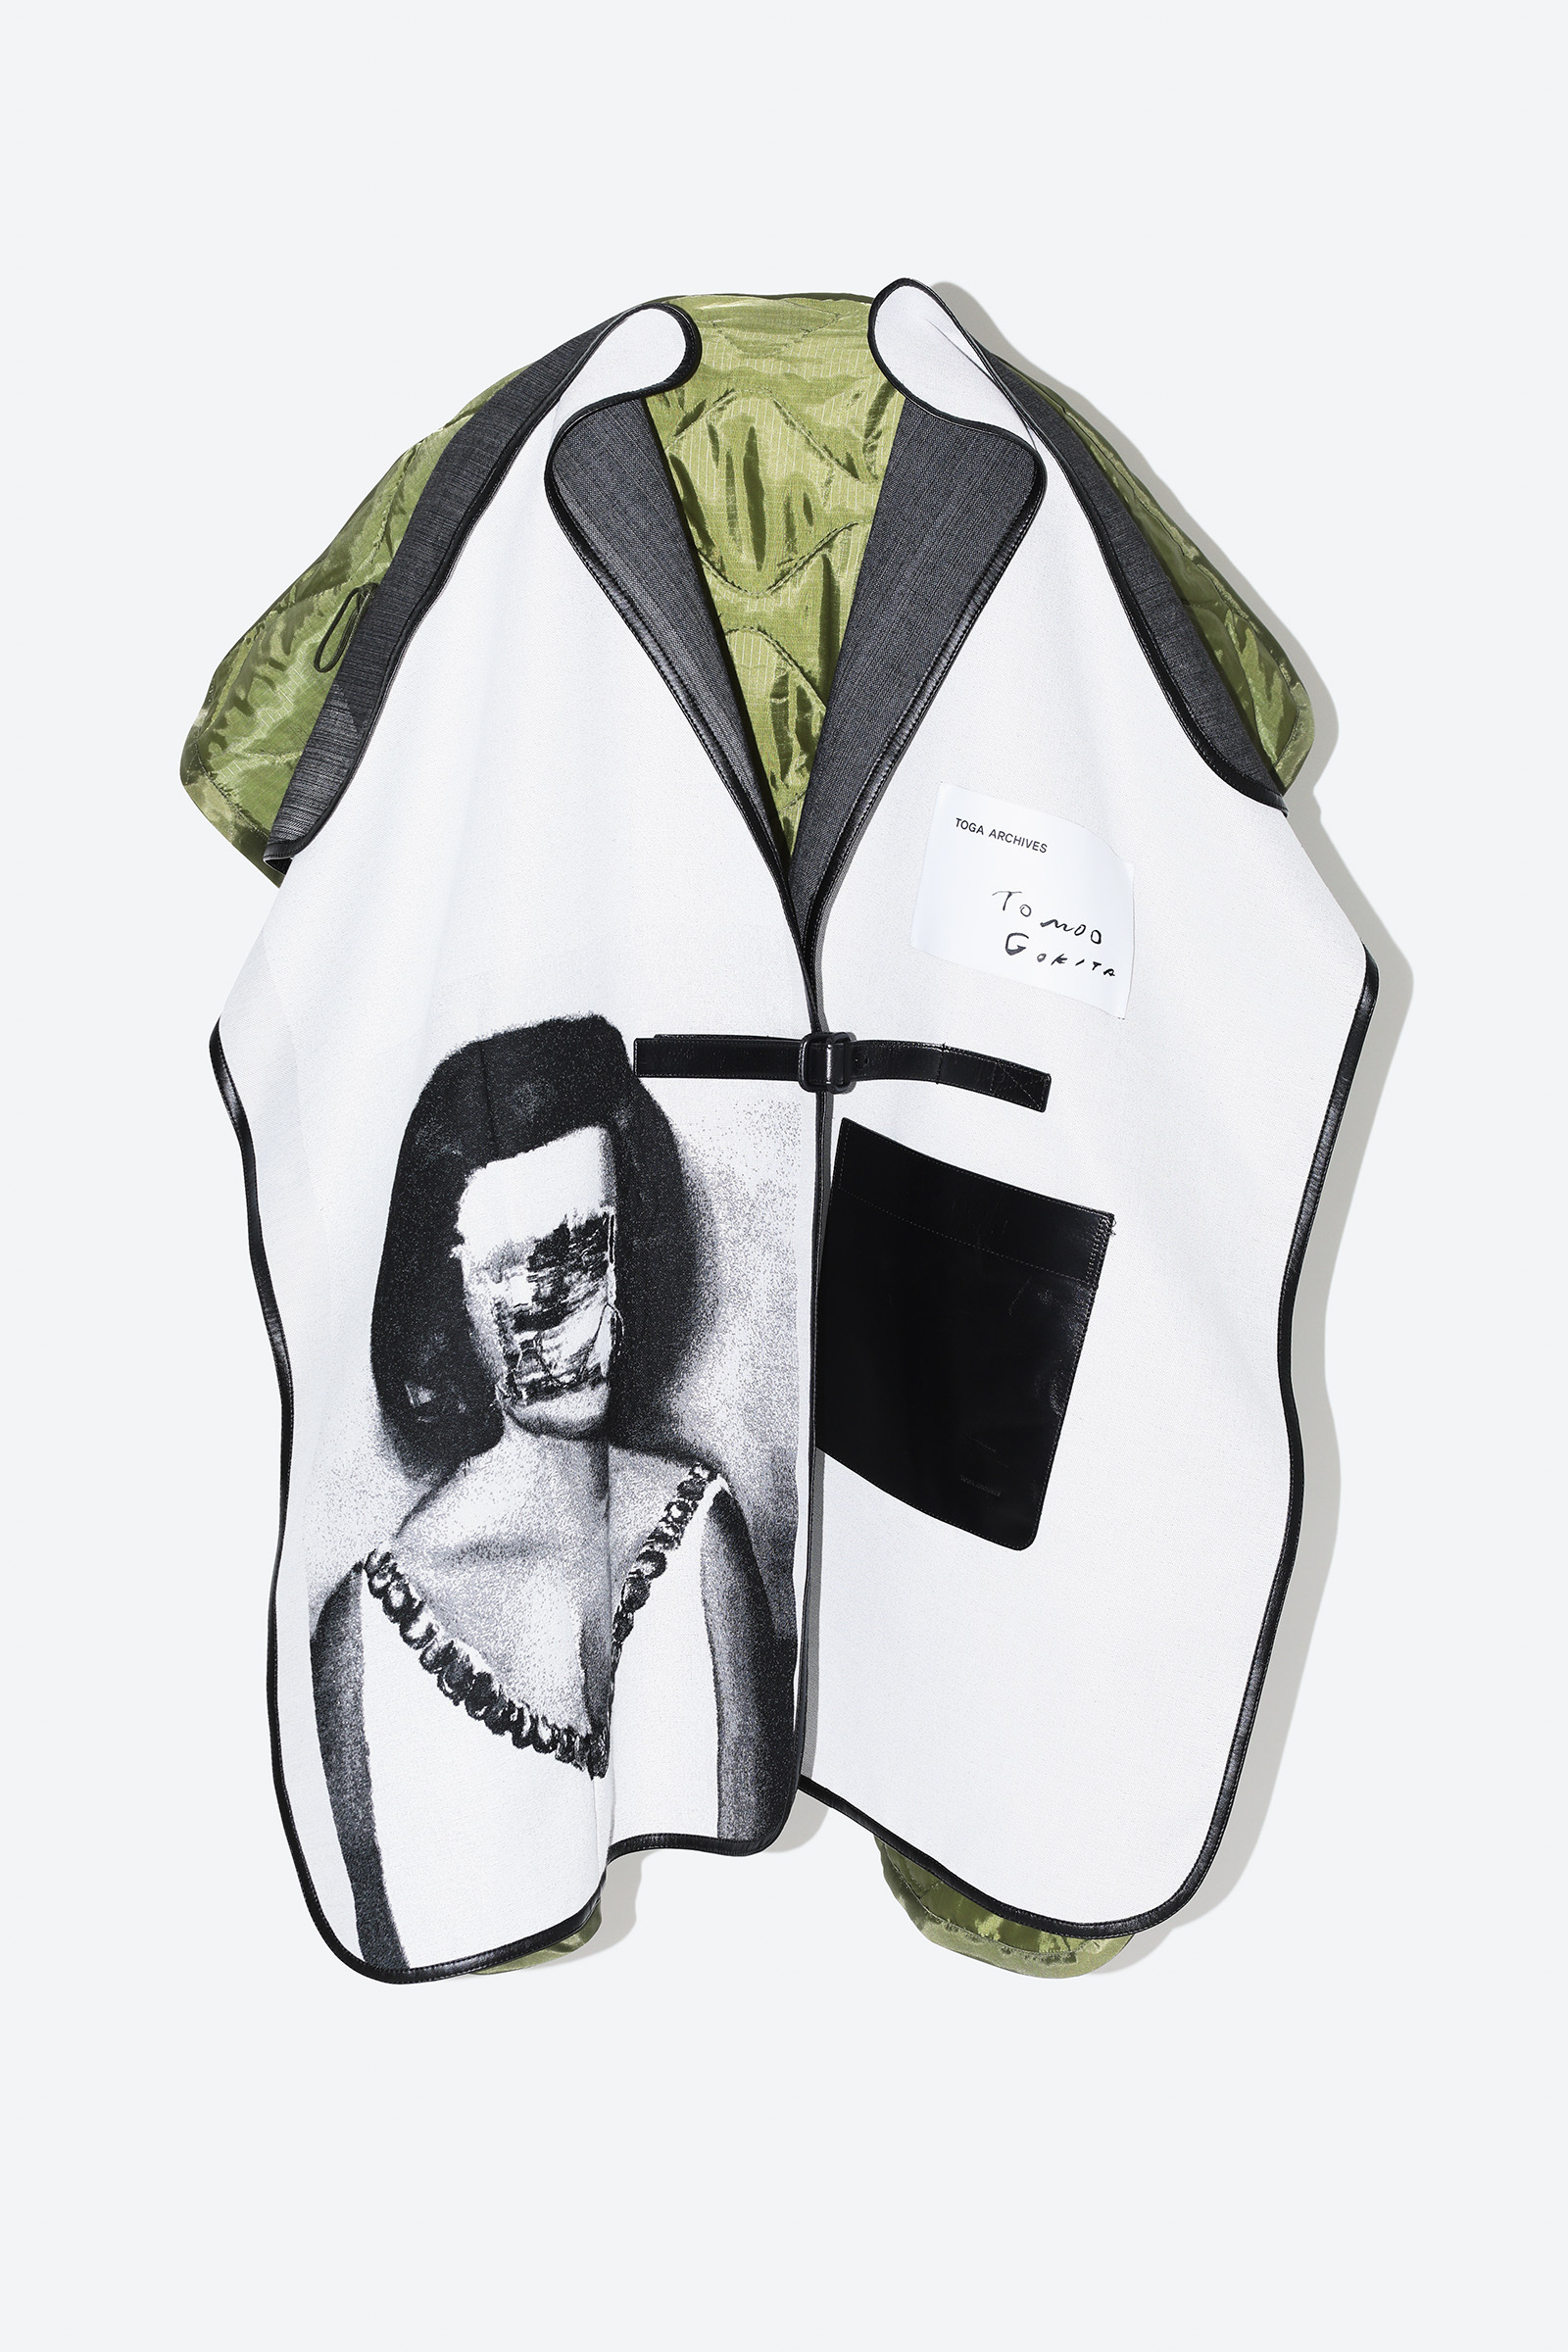 「TOGA」アーティスト五木田智央とのカプセルコレクション発売 コートからTシャツ、ポーチまで